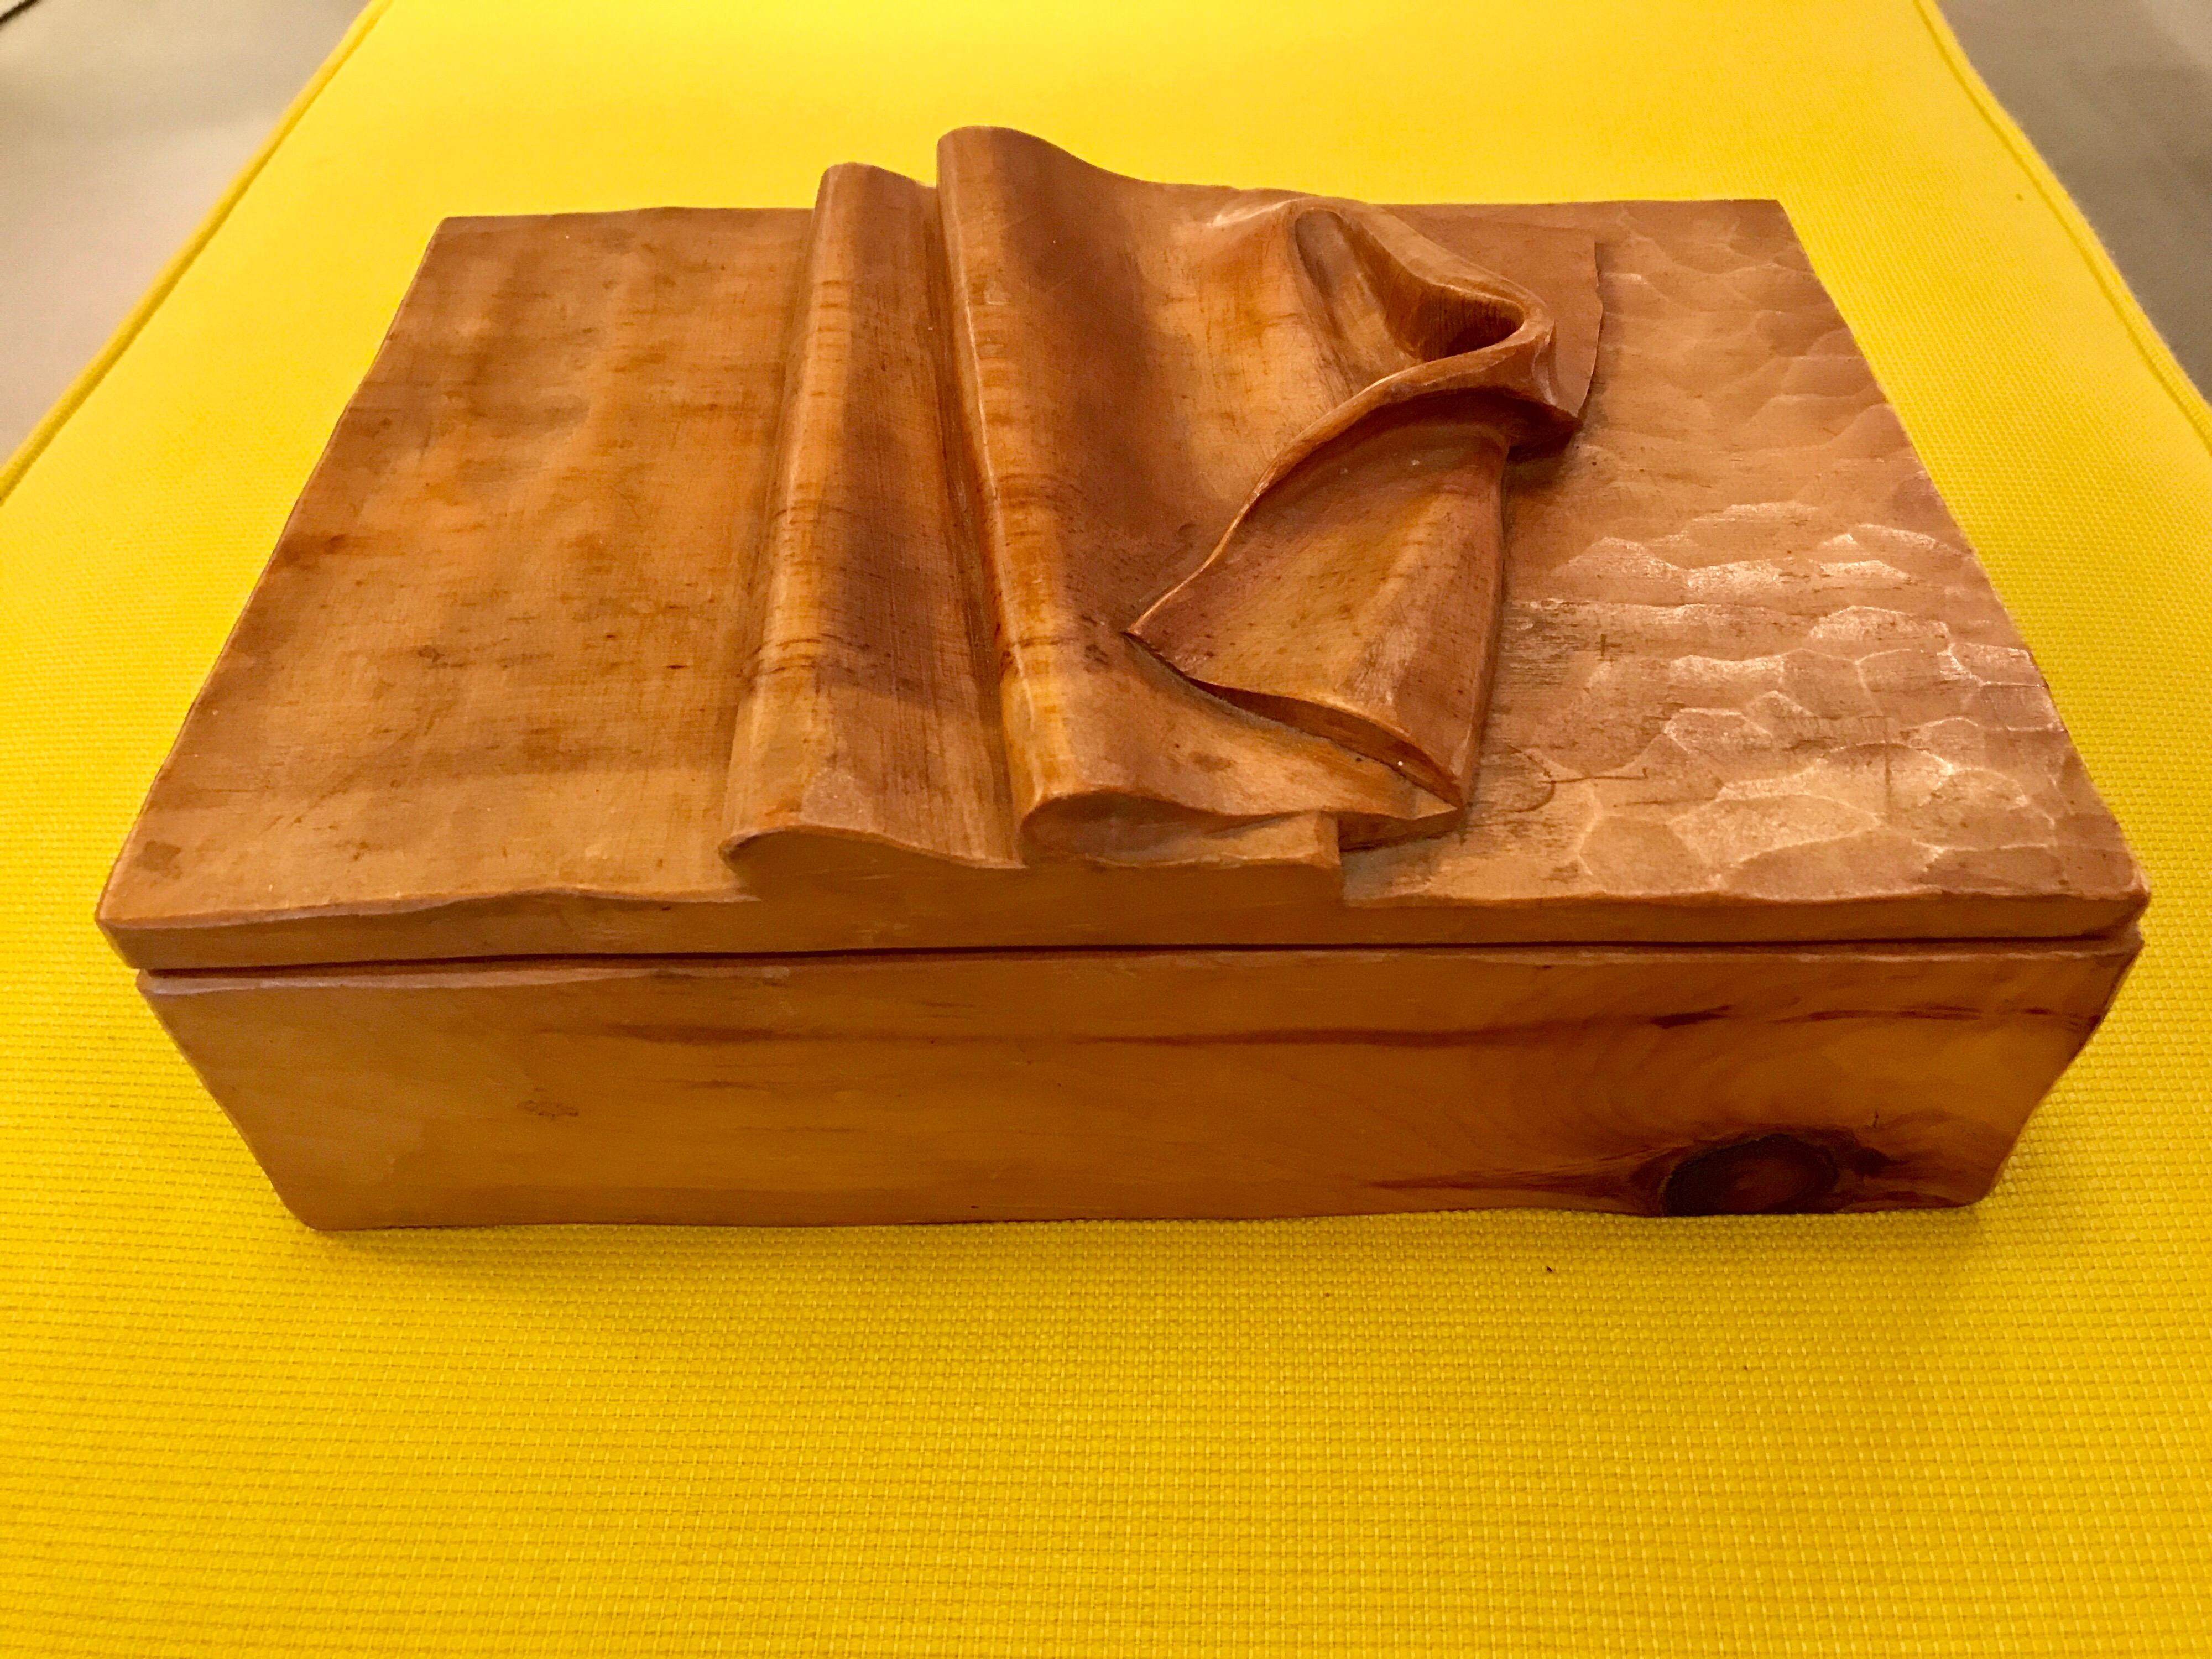 1970s hand craft wood box.